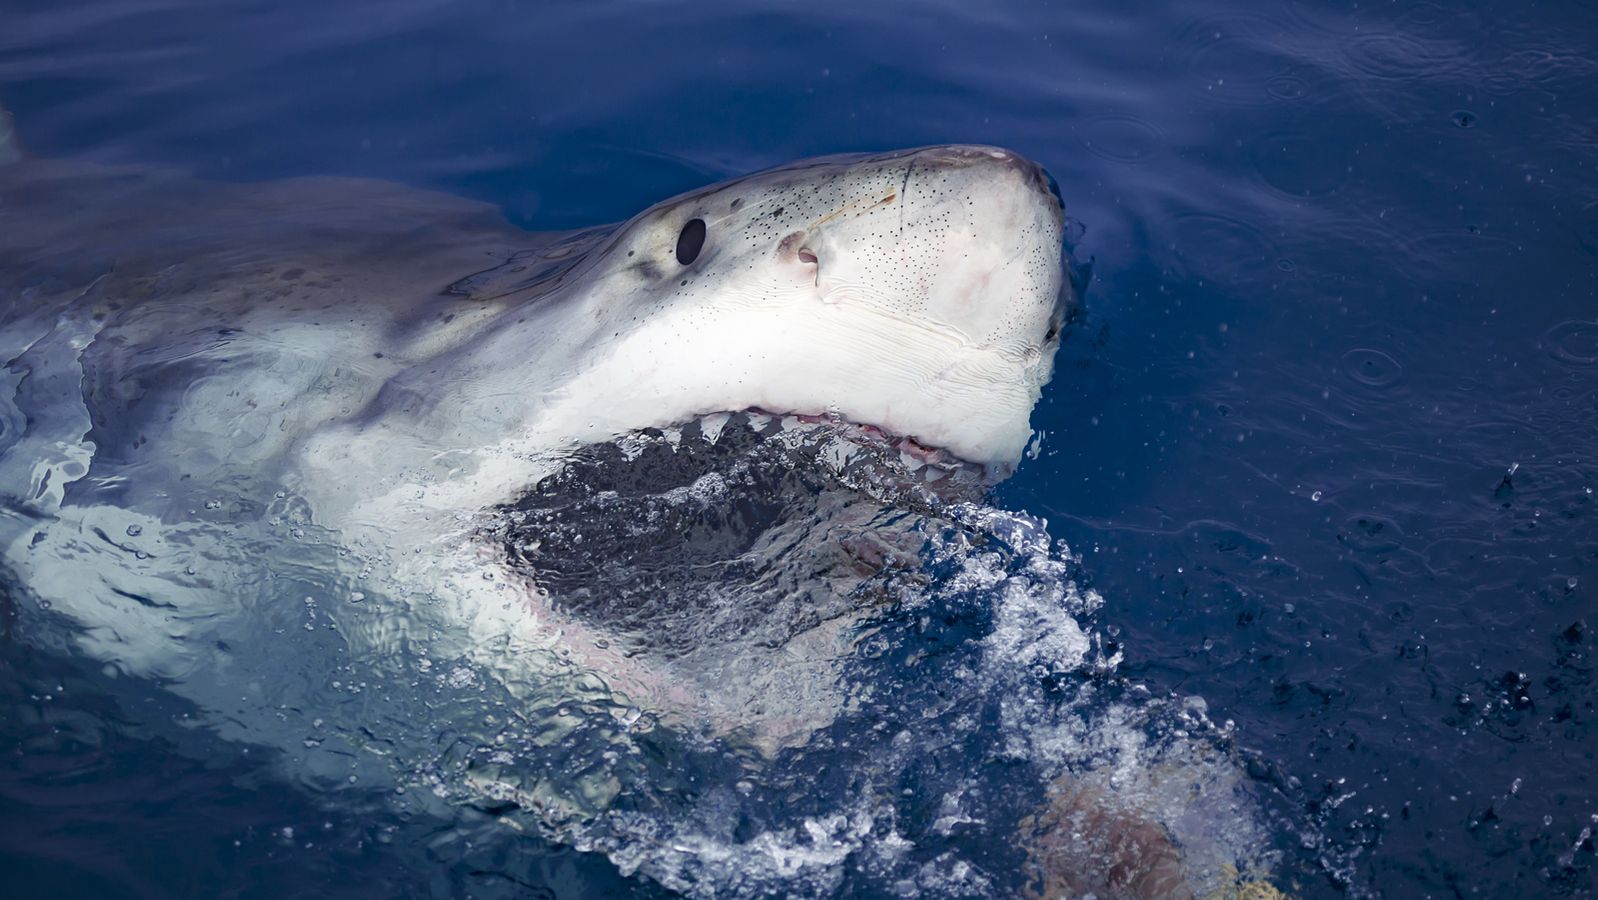 Shark warning: A man killed by a shark in Australia